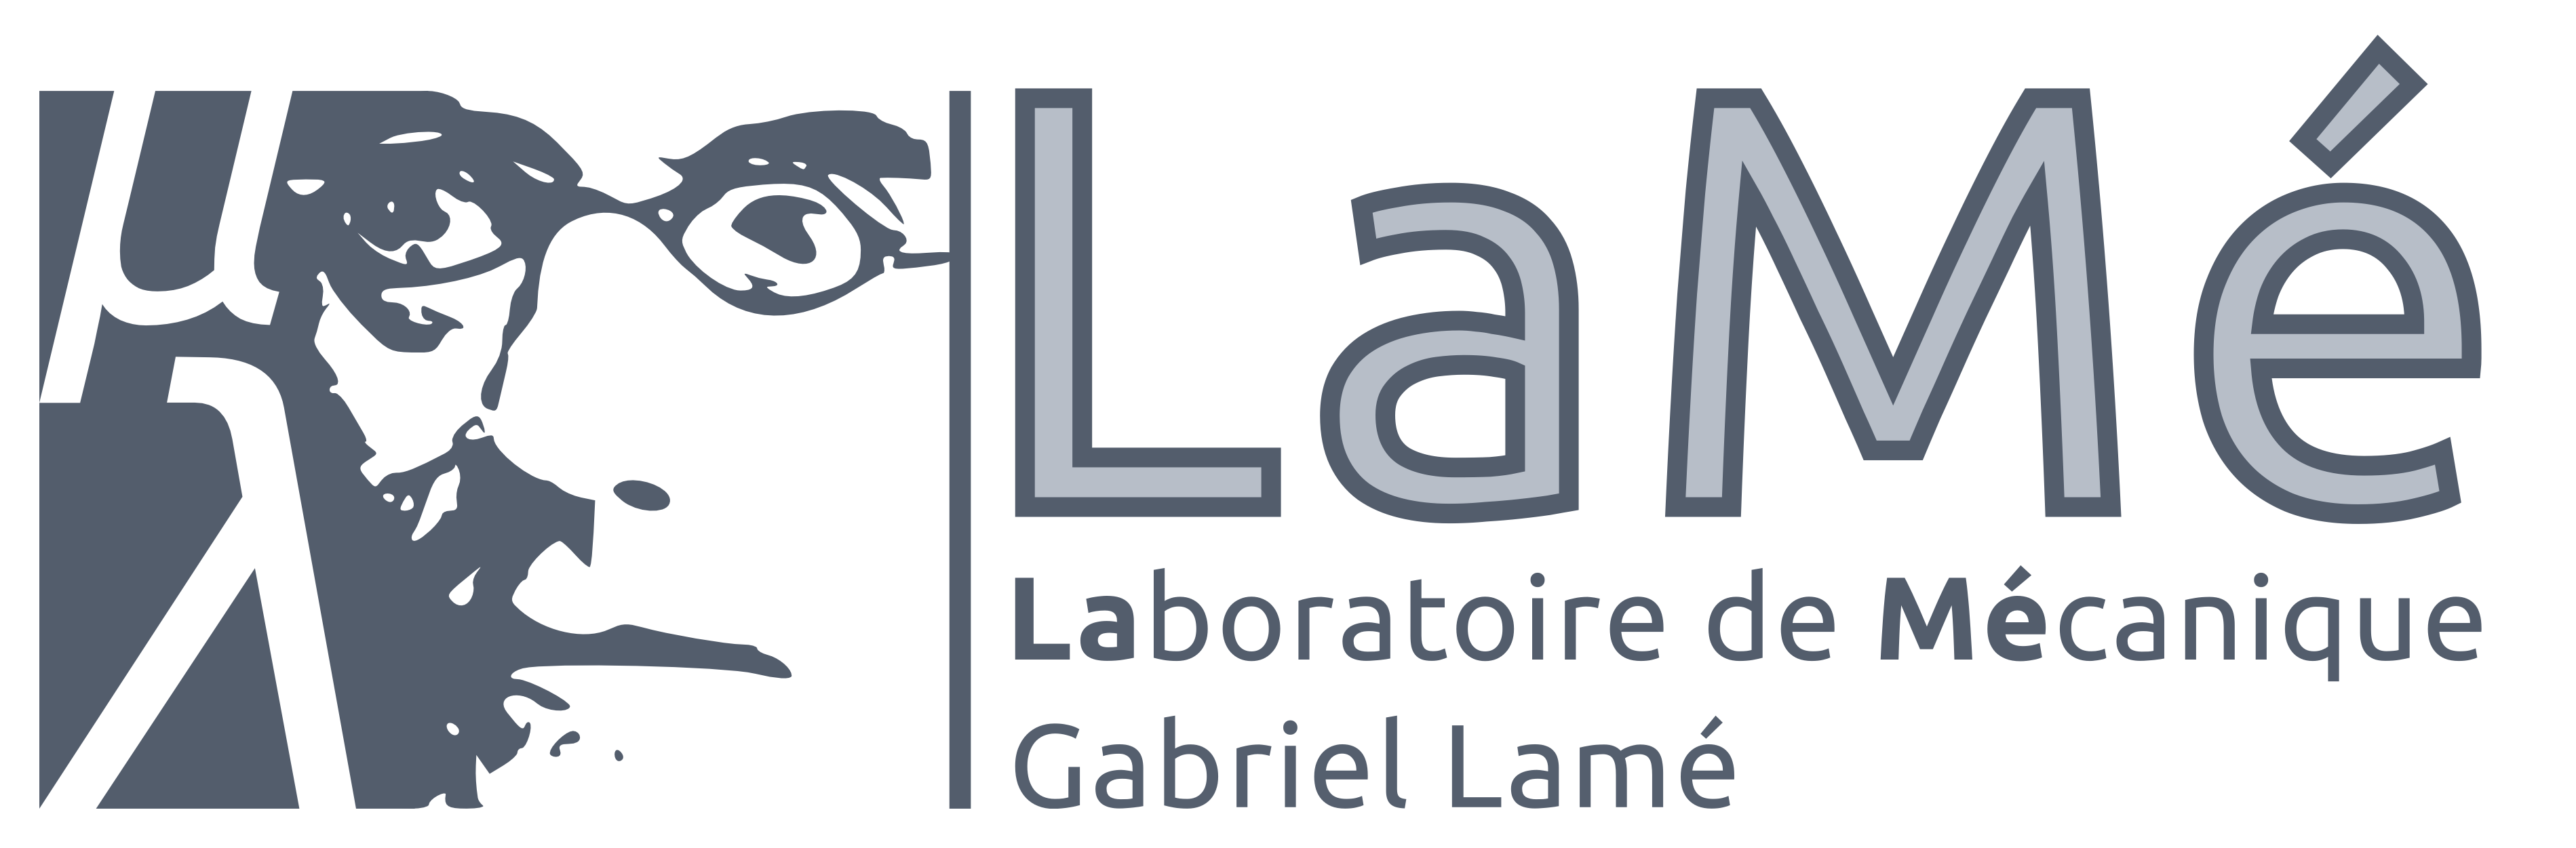 Logo Laboratoire de Mécanique Gabriel Lamé